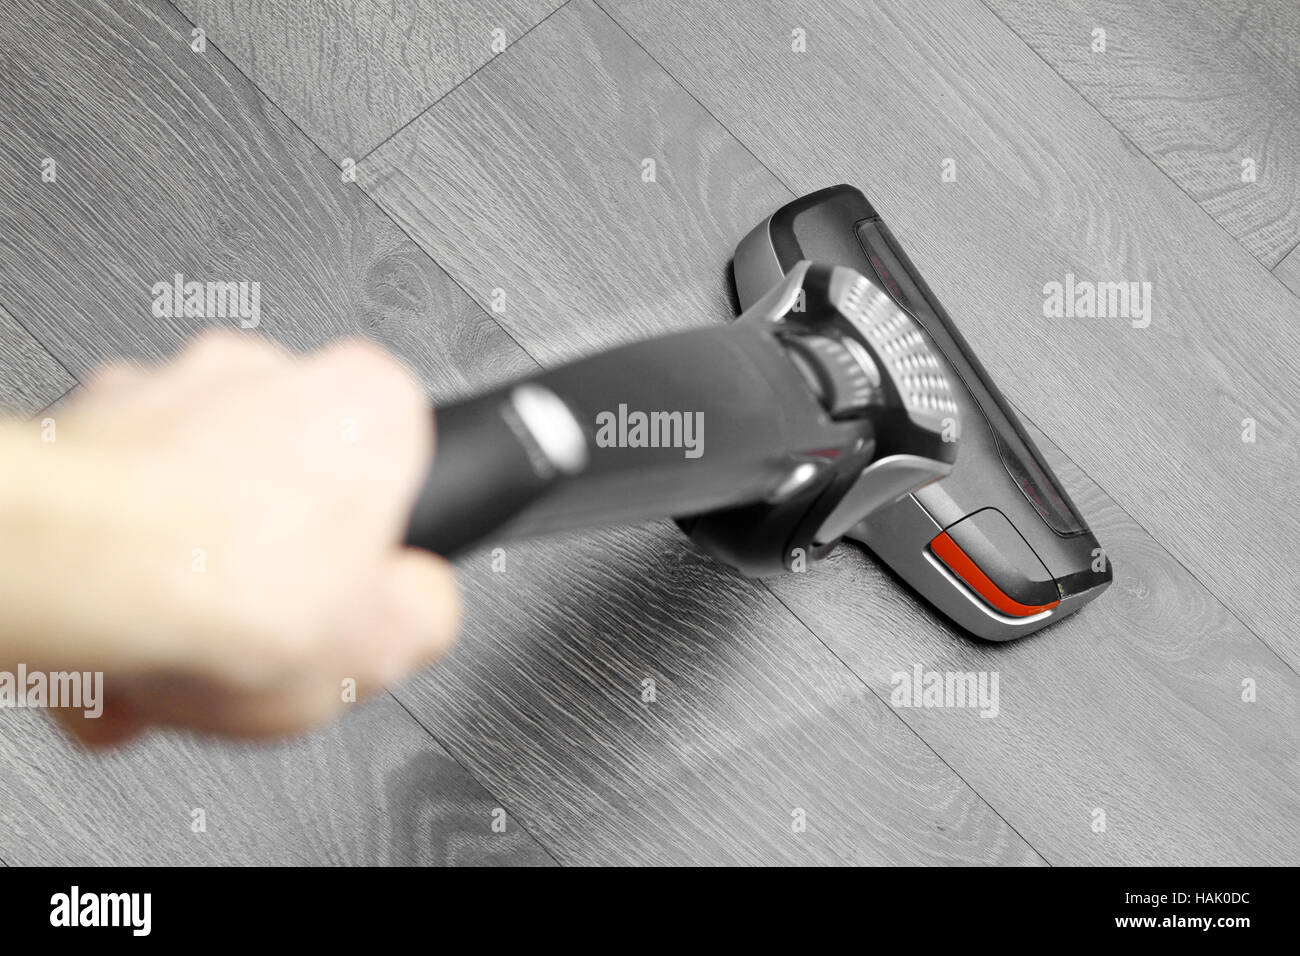 La pulizia del pavimento cordless con aspirapolvere Foto Stock